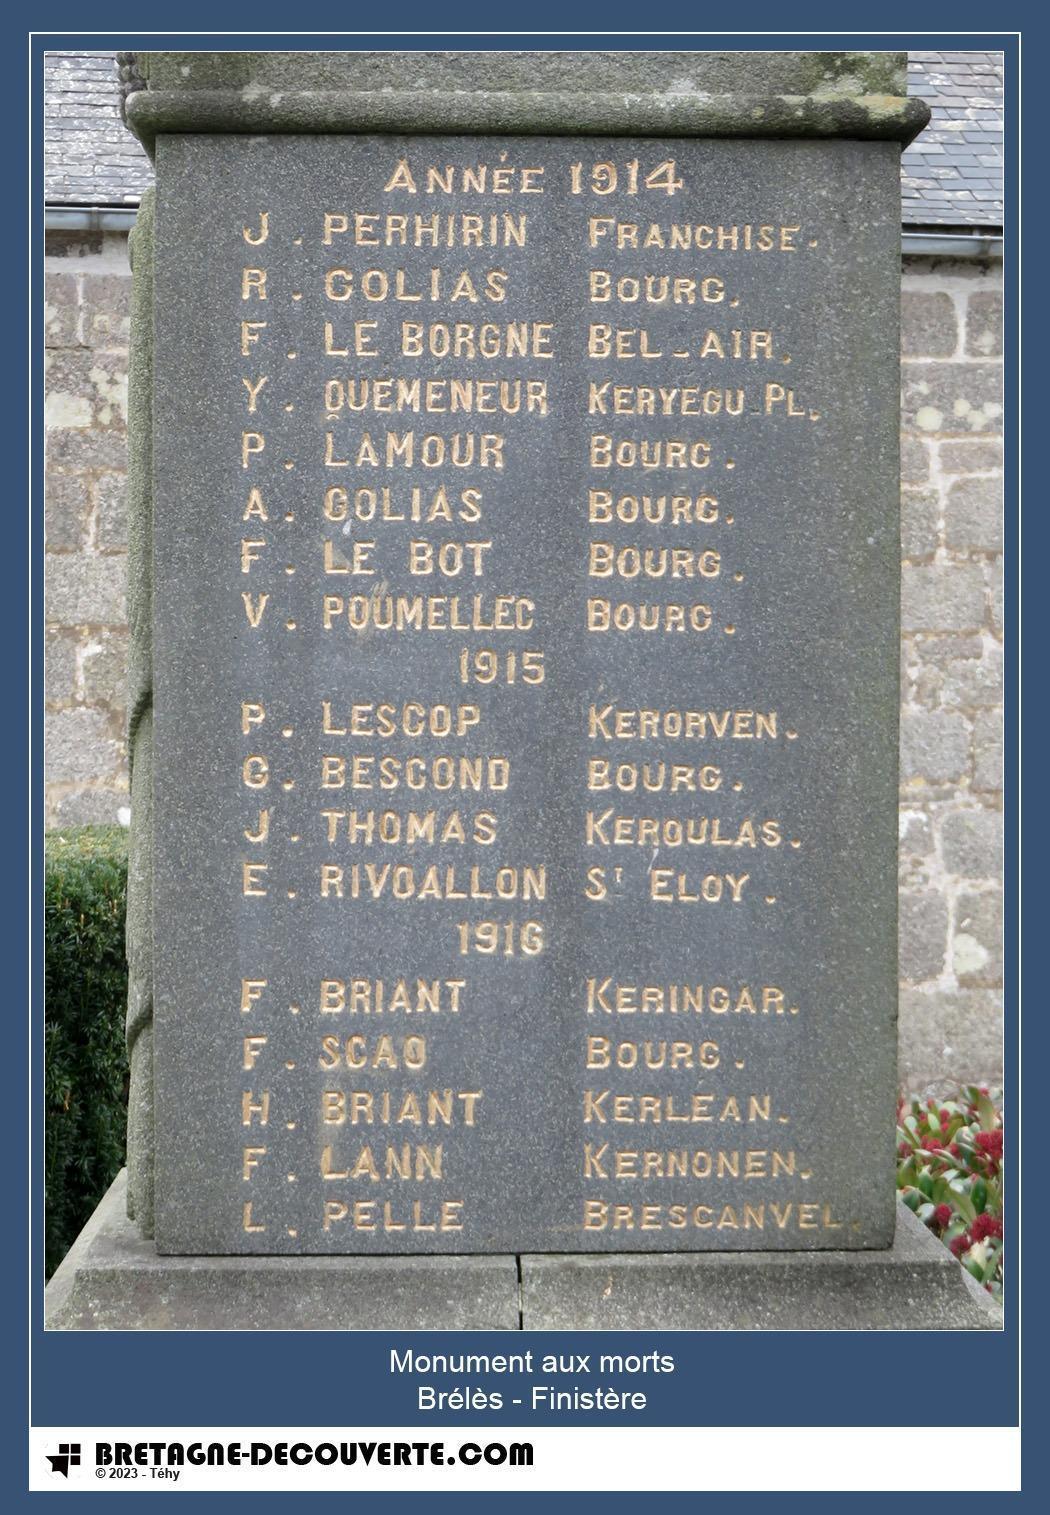 Les noms gravés sur le monument aux morts de Brélès